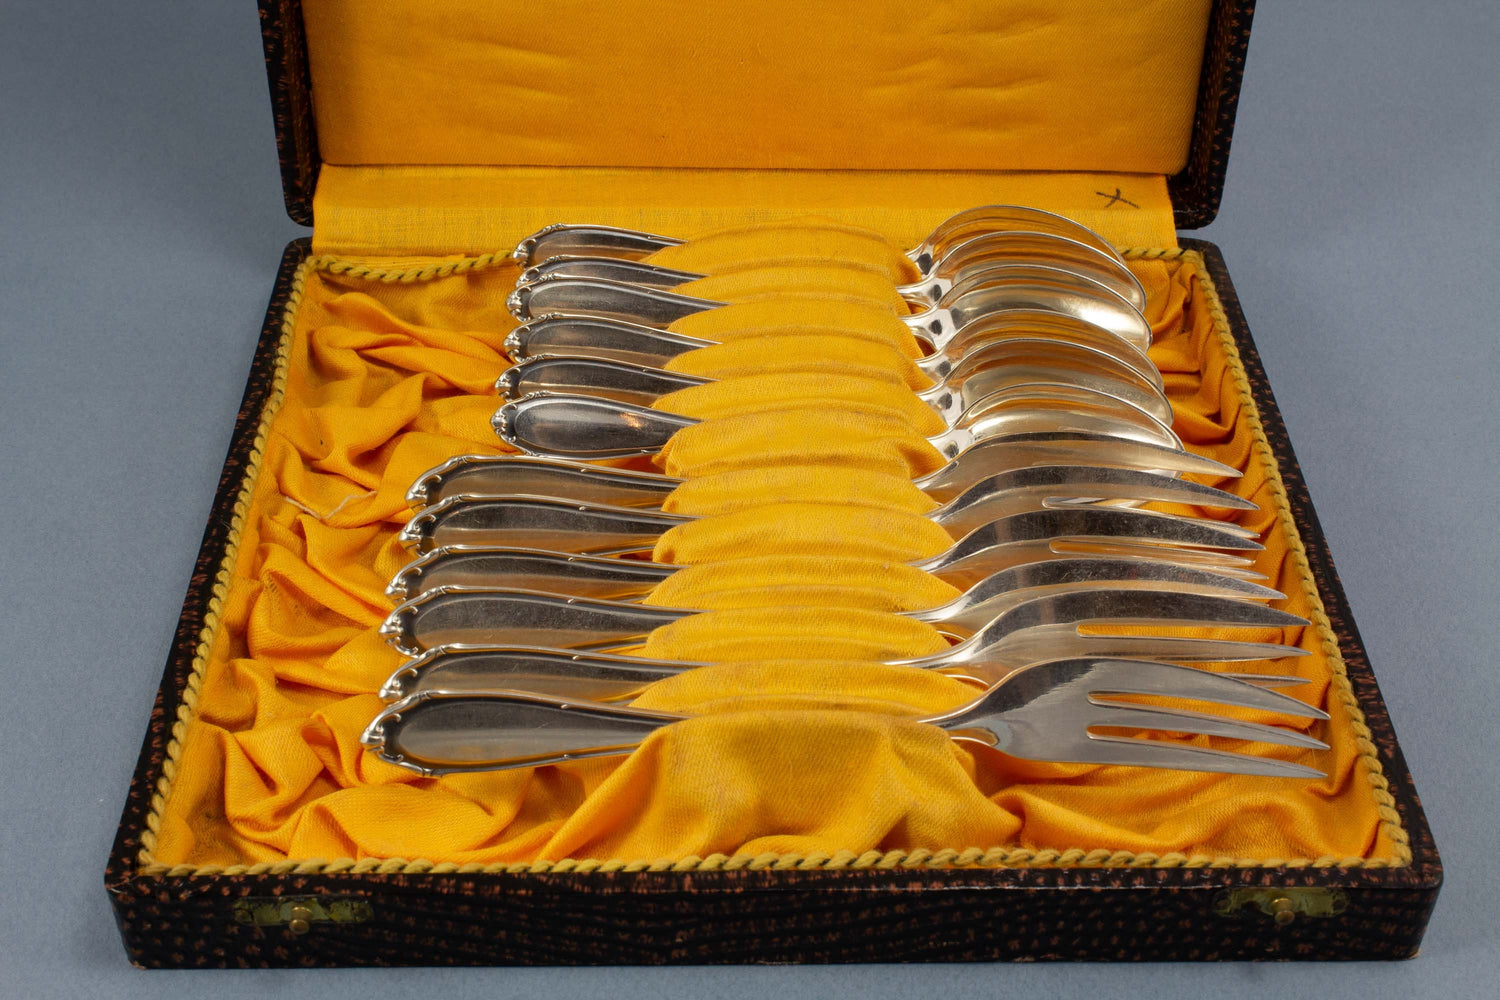 Silberne Kuchengabeln und Teelöffel von BSF, 800er Silber, Fackel, Halbmond + Krone, Besteck Set für 6 Personen